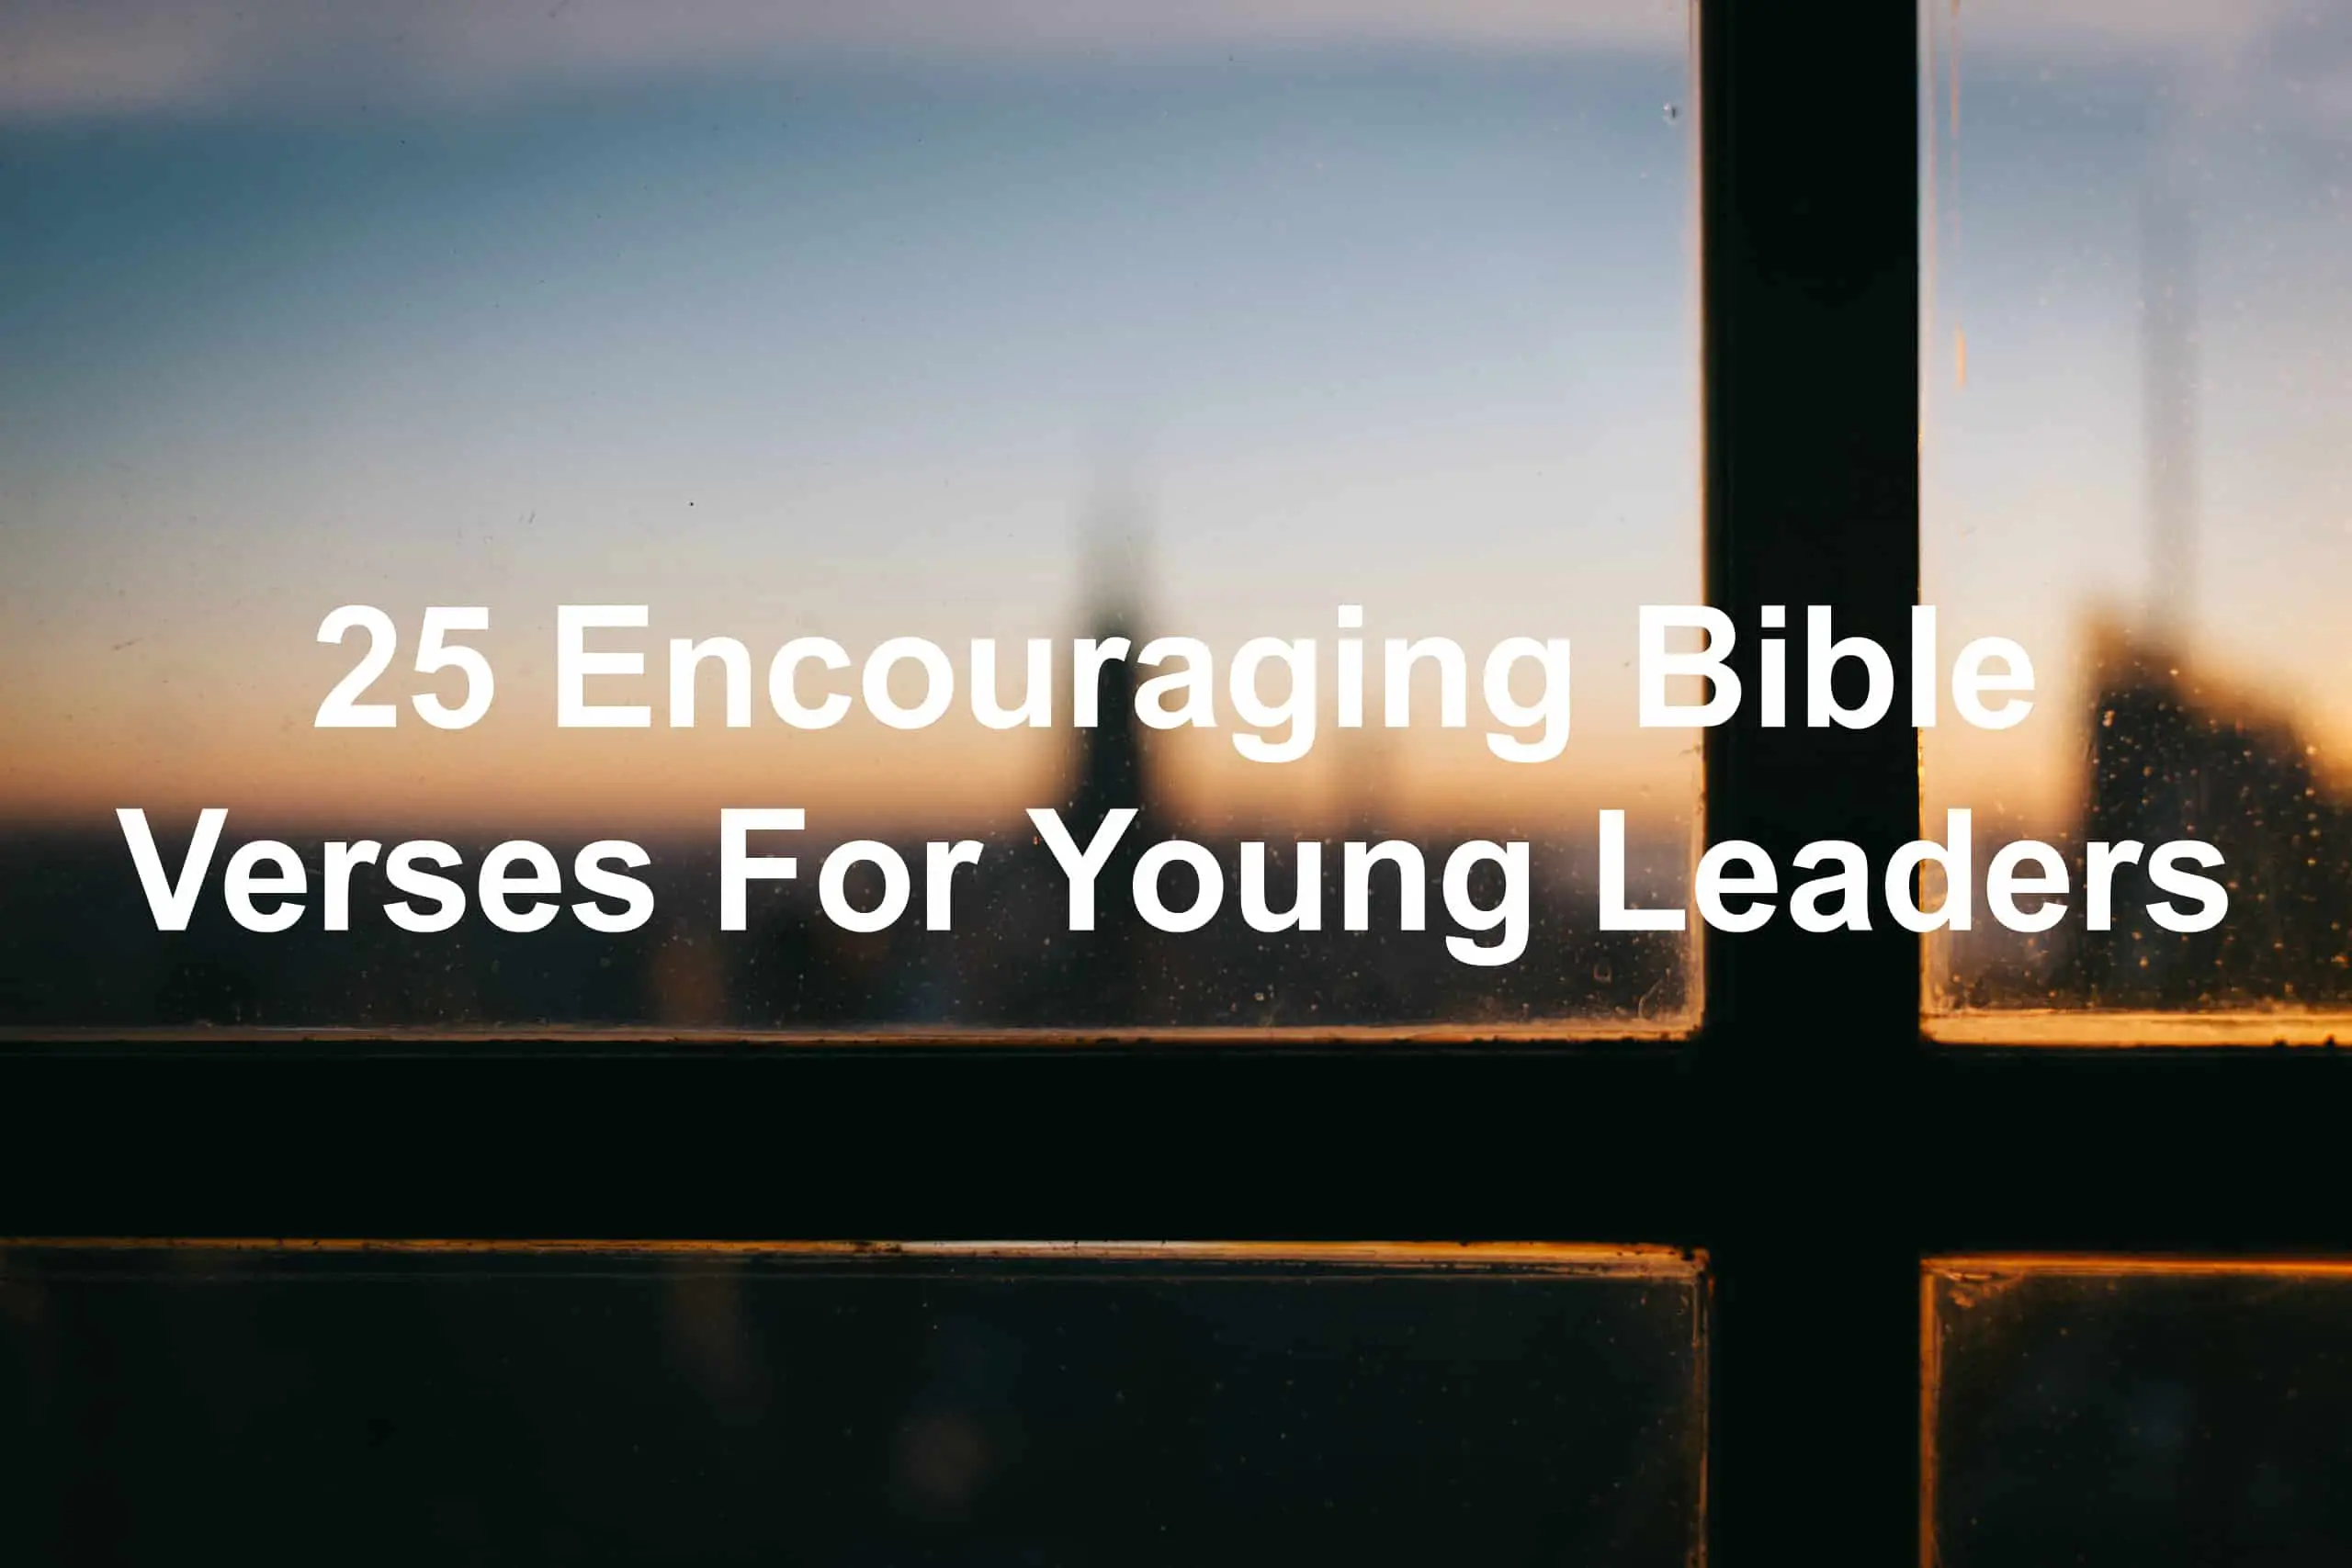  Versets bibliques pour encourager les leaders 